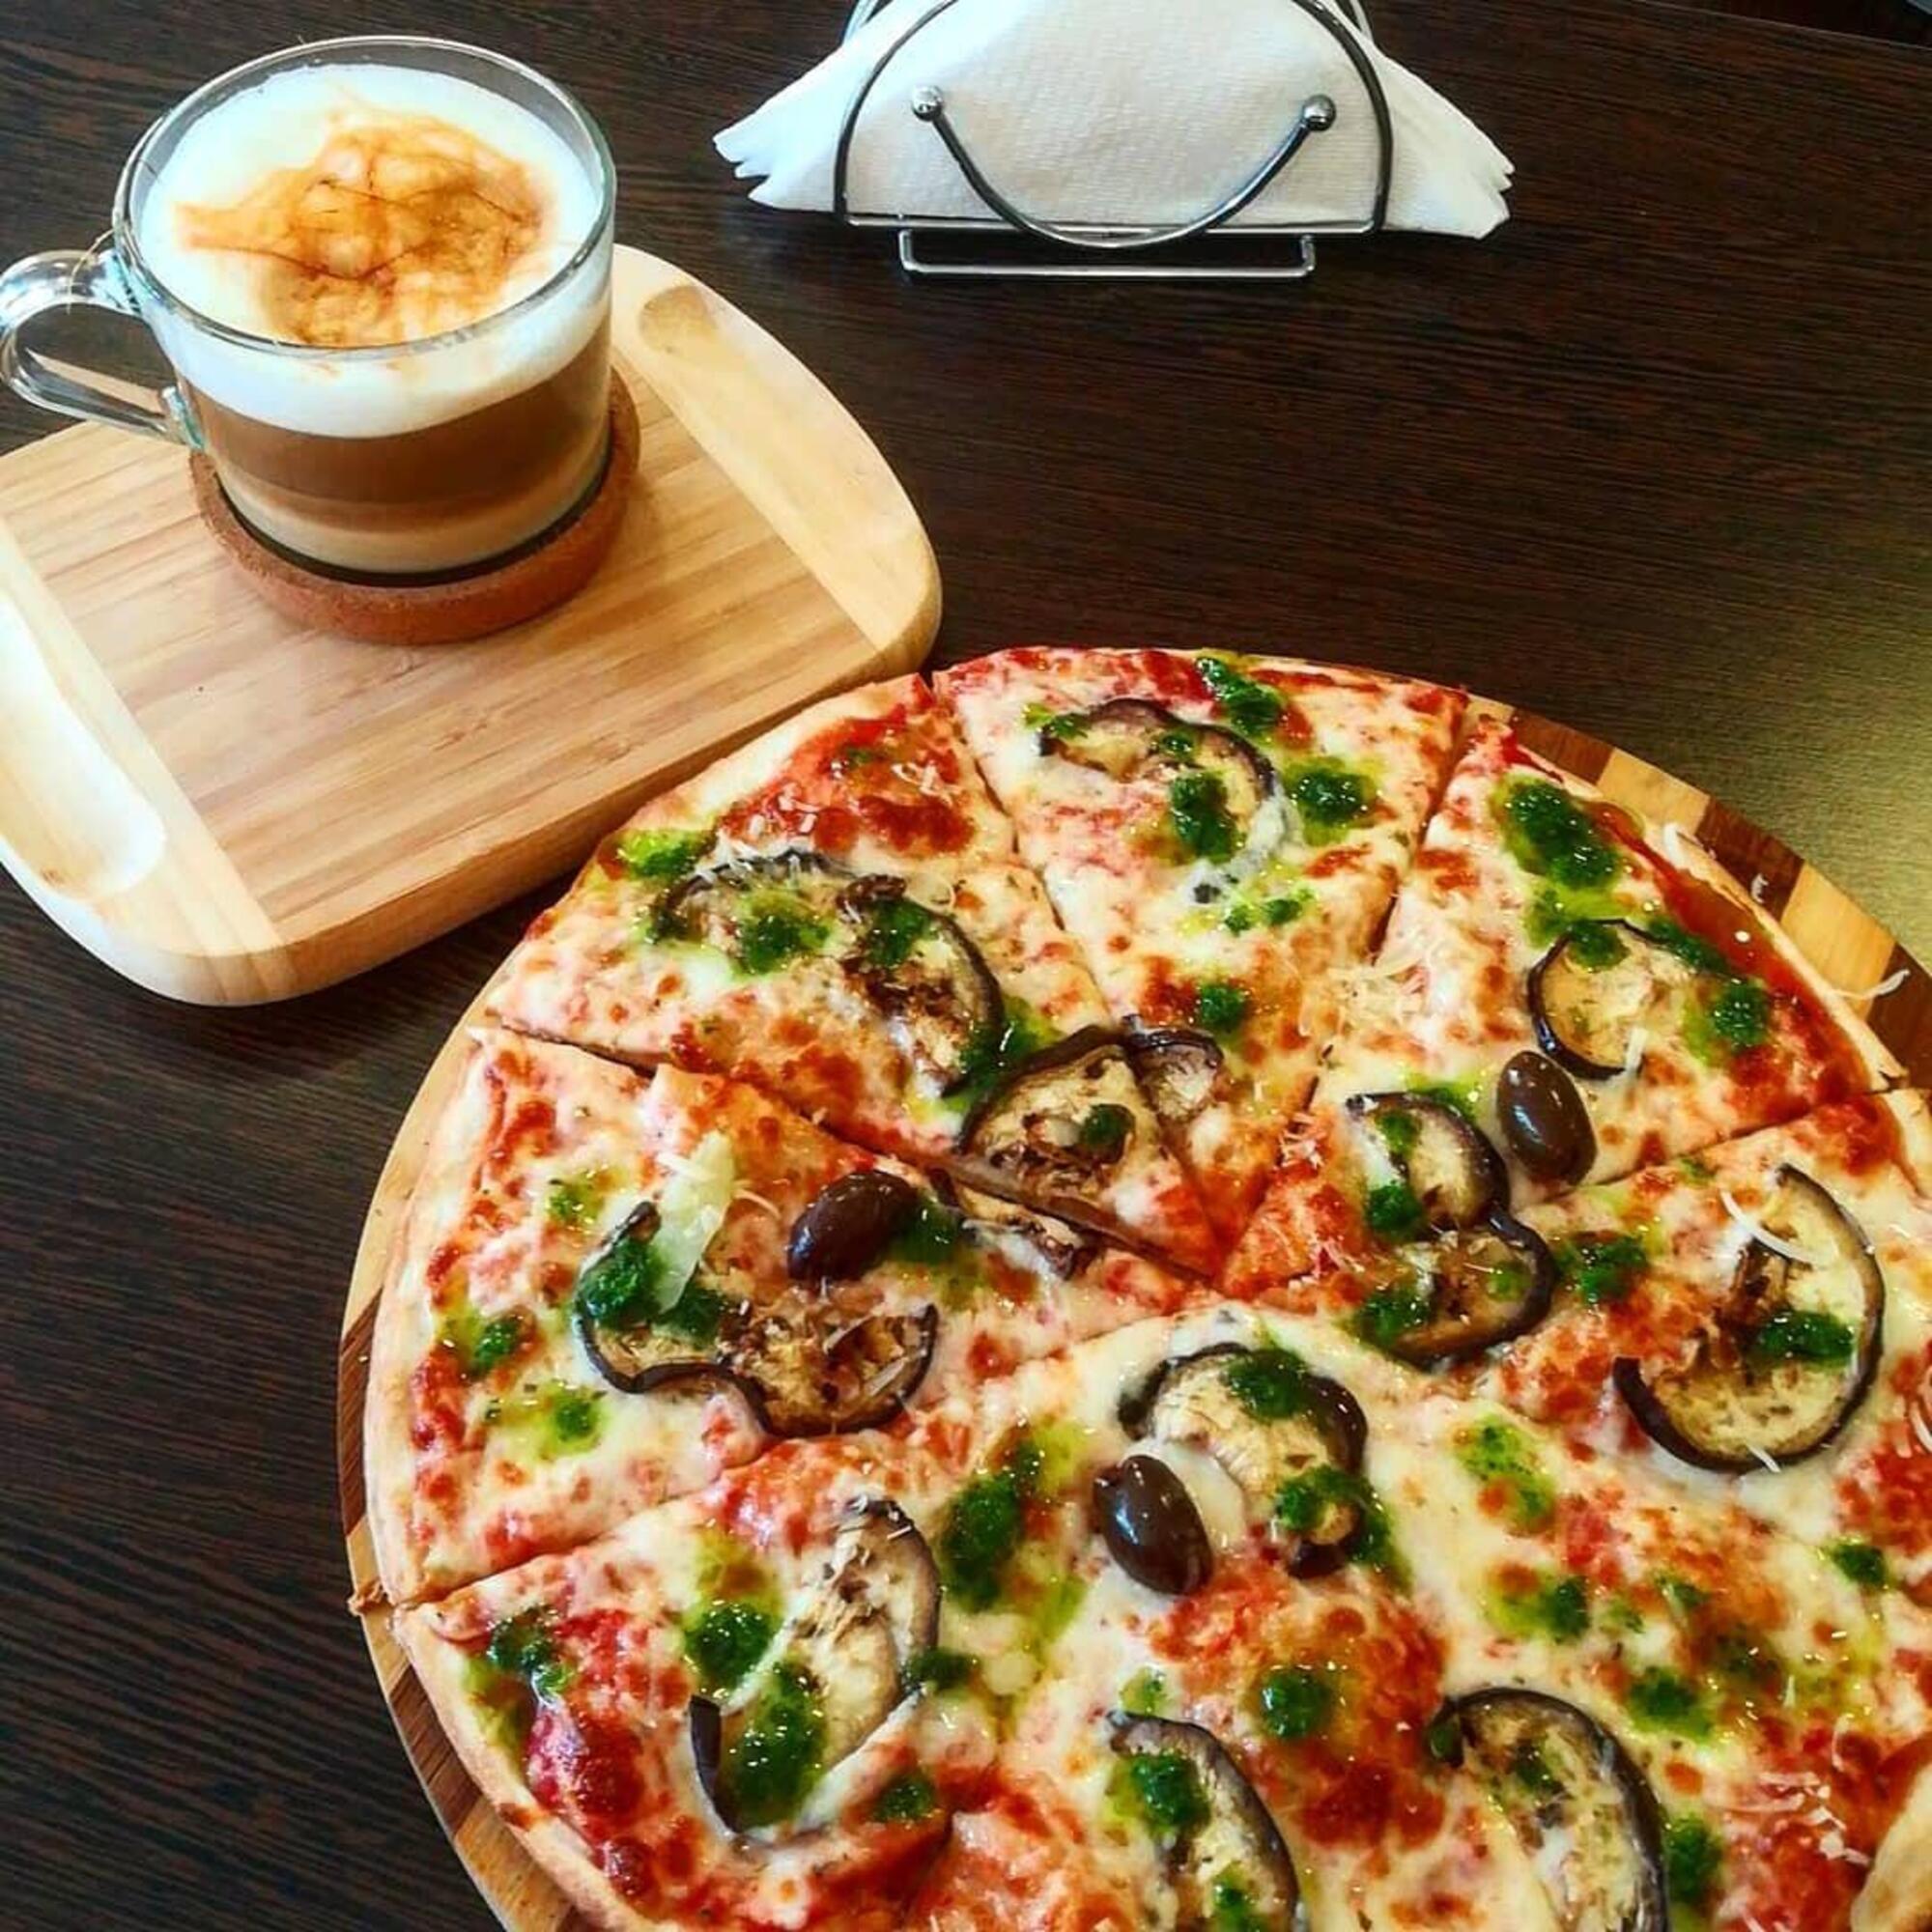 Pizza servita con cappuccino, dalla pagina di un ristorante americano